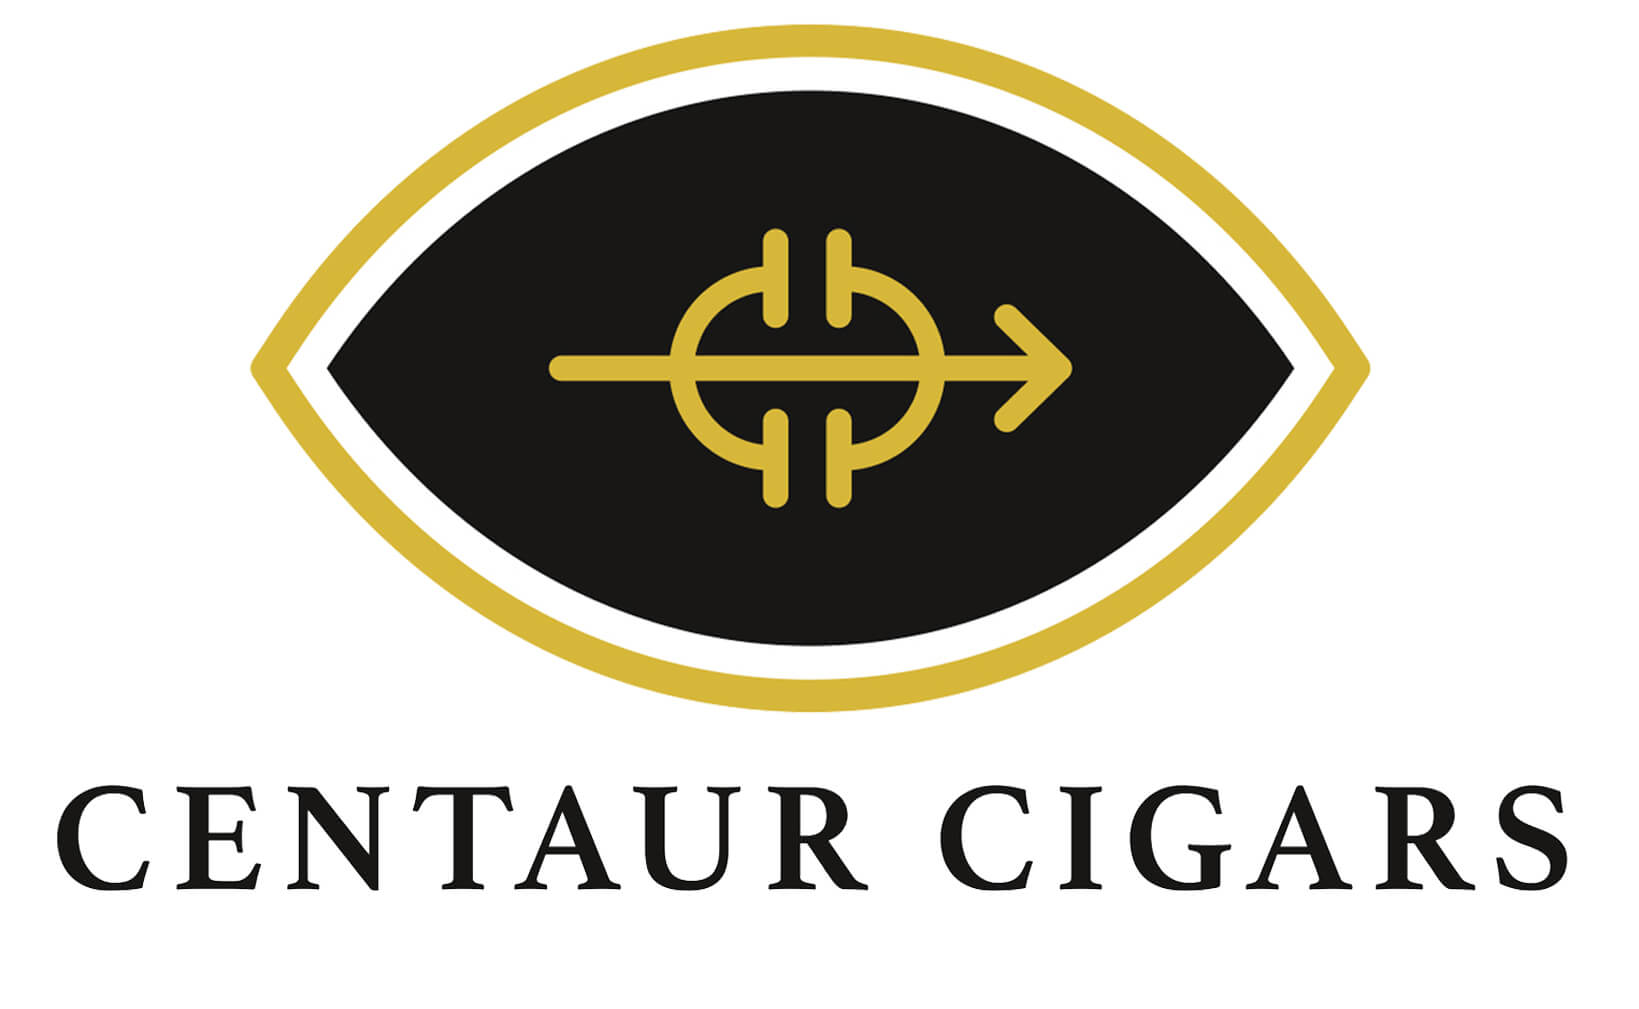 Centaur Cigars